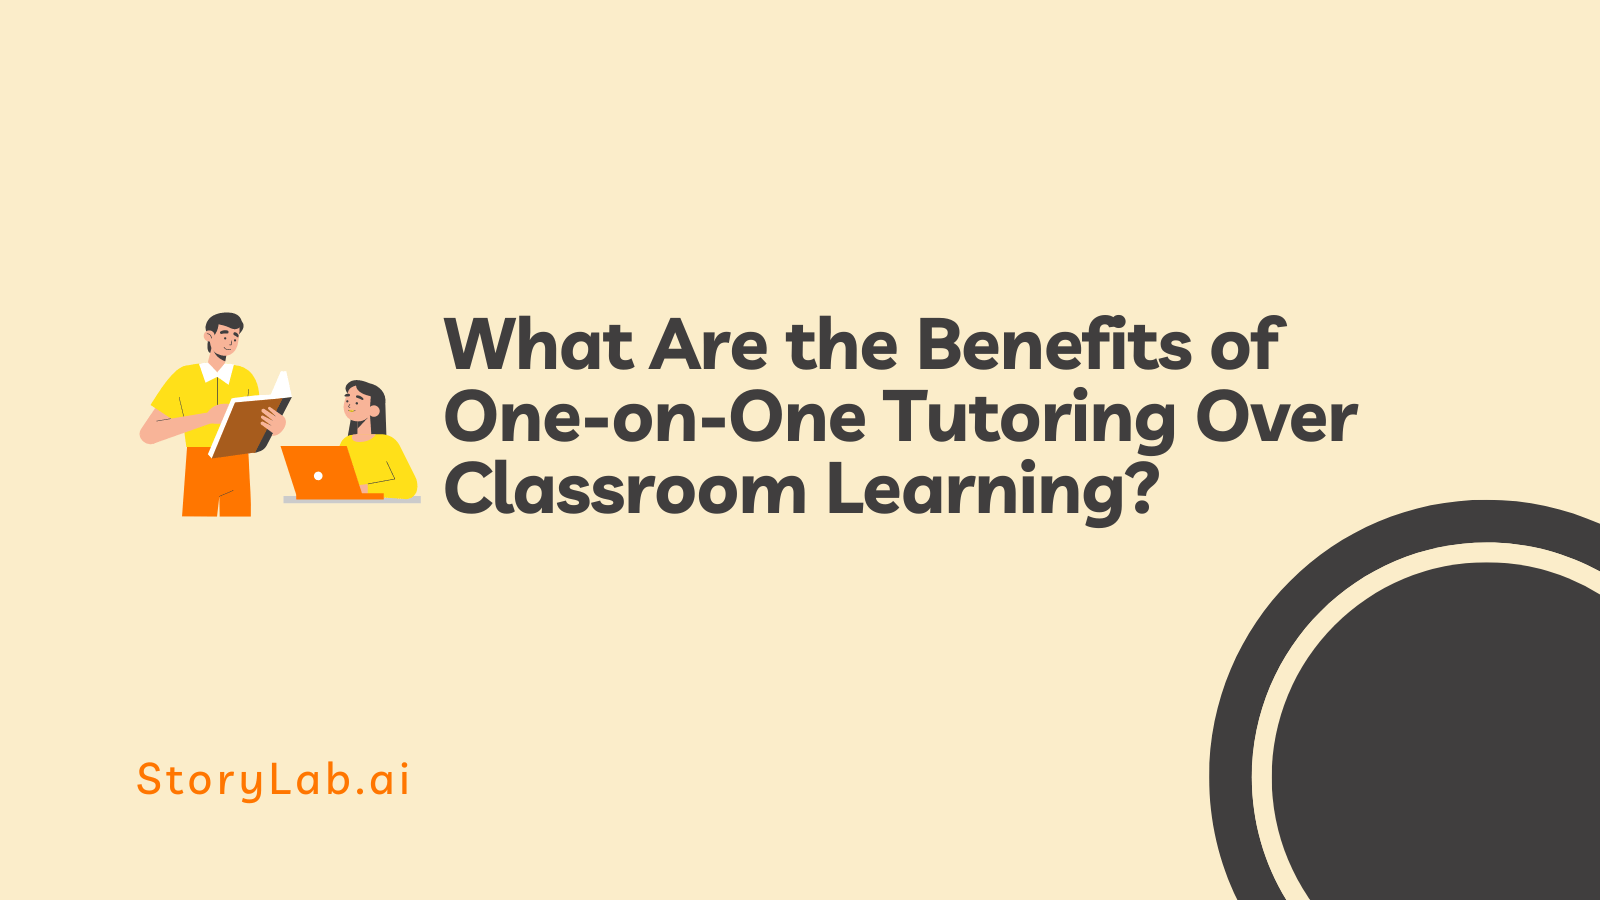 Quais são os benefícios da tutoria individual em relação ao aprendizado em sala de aula